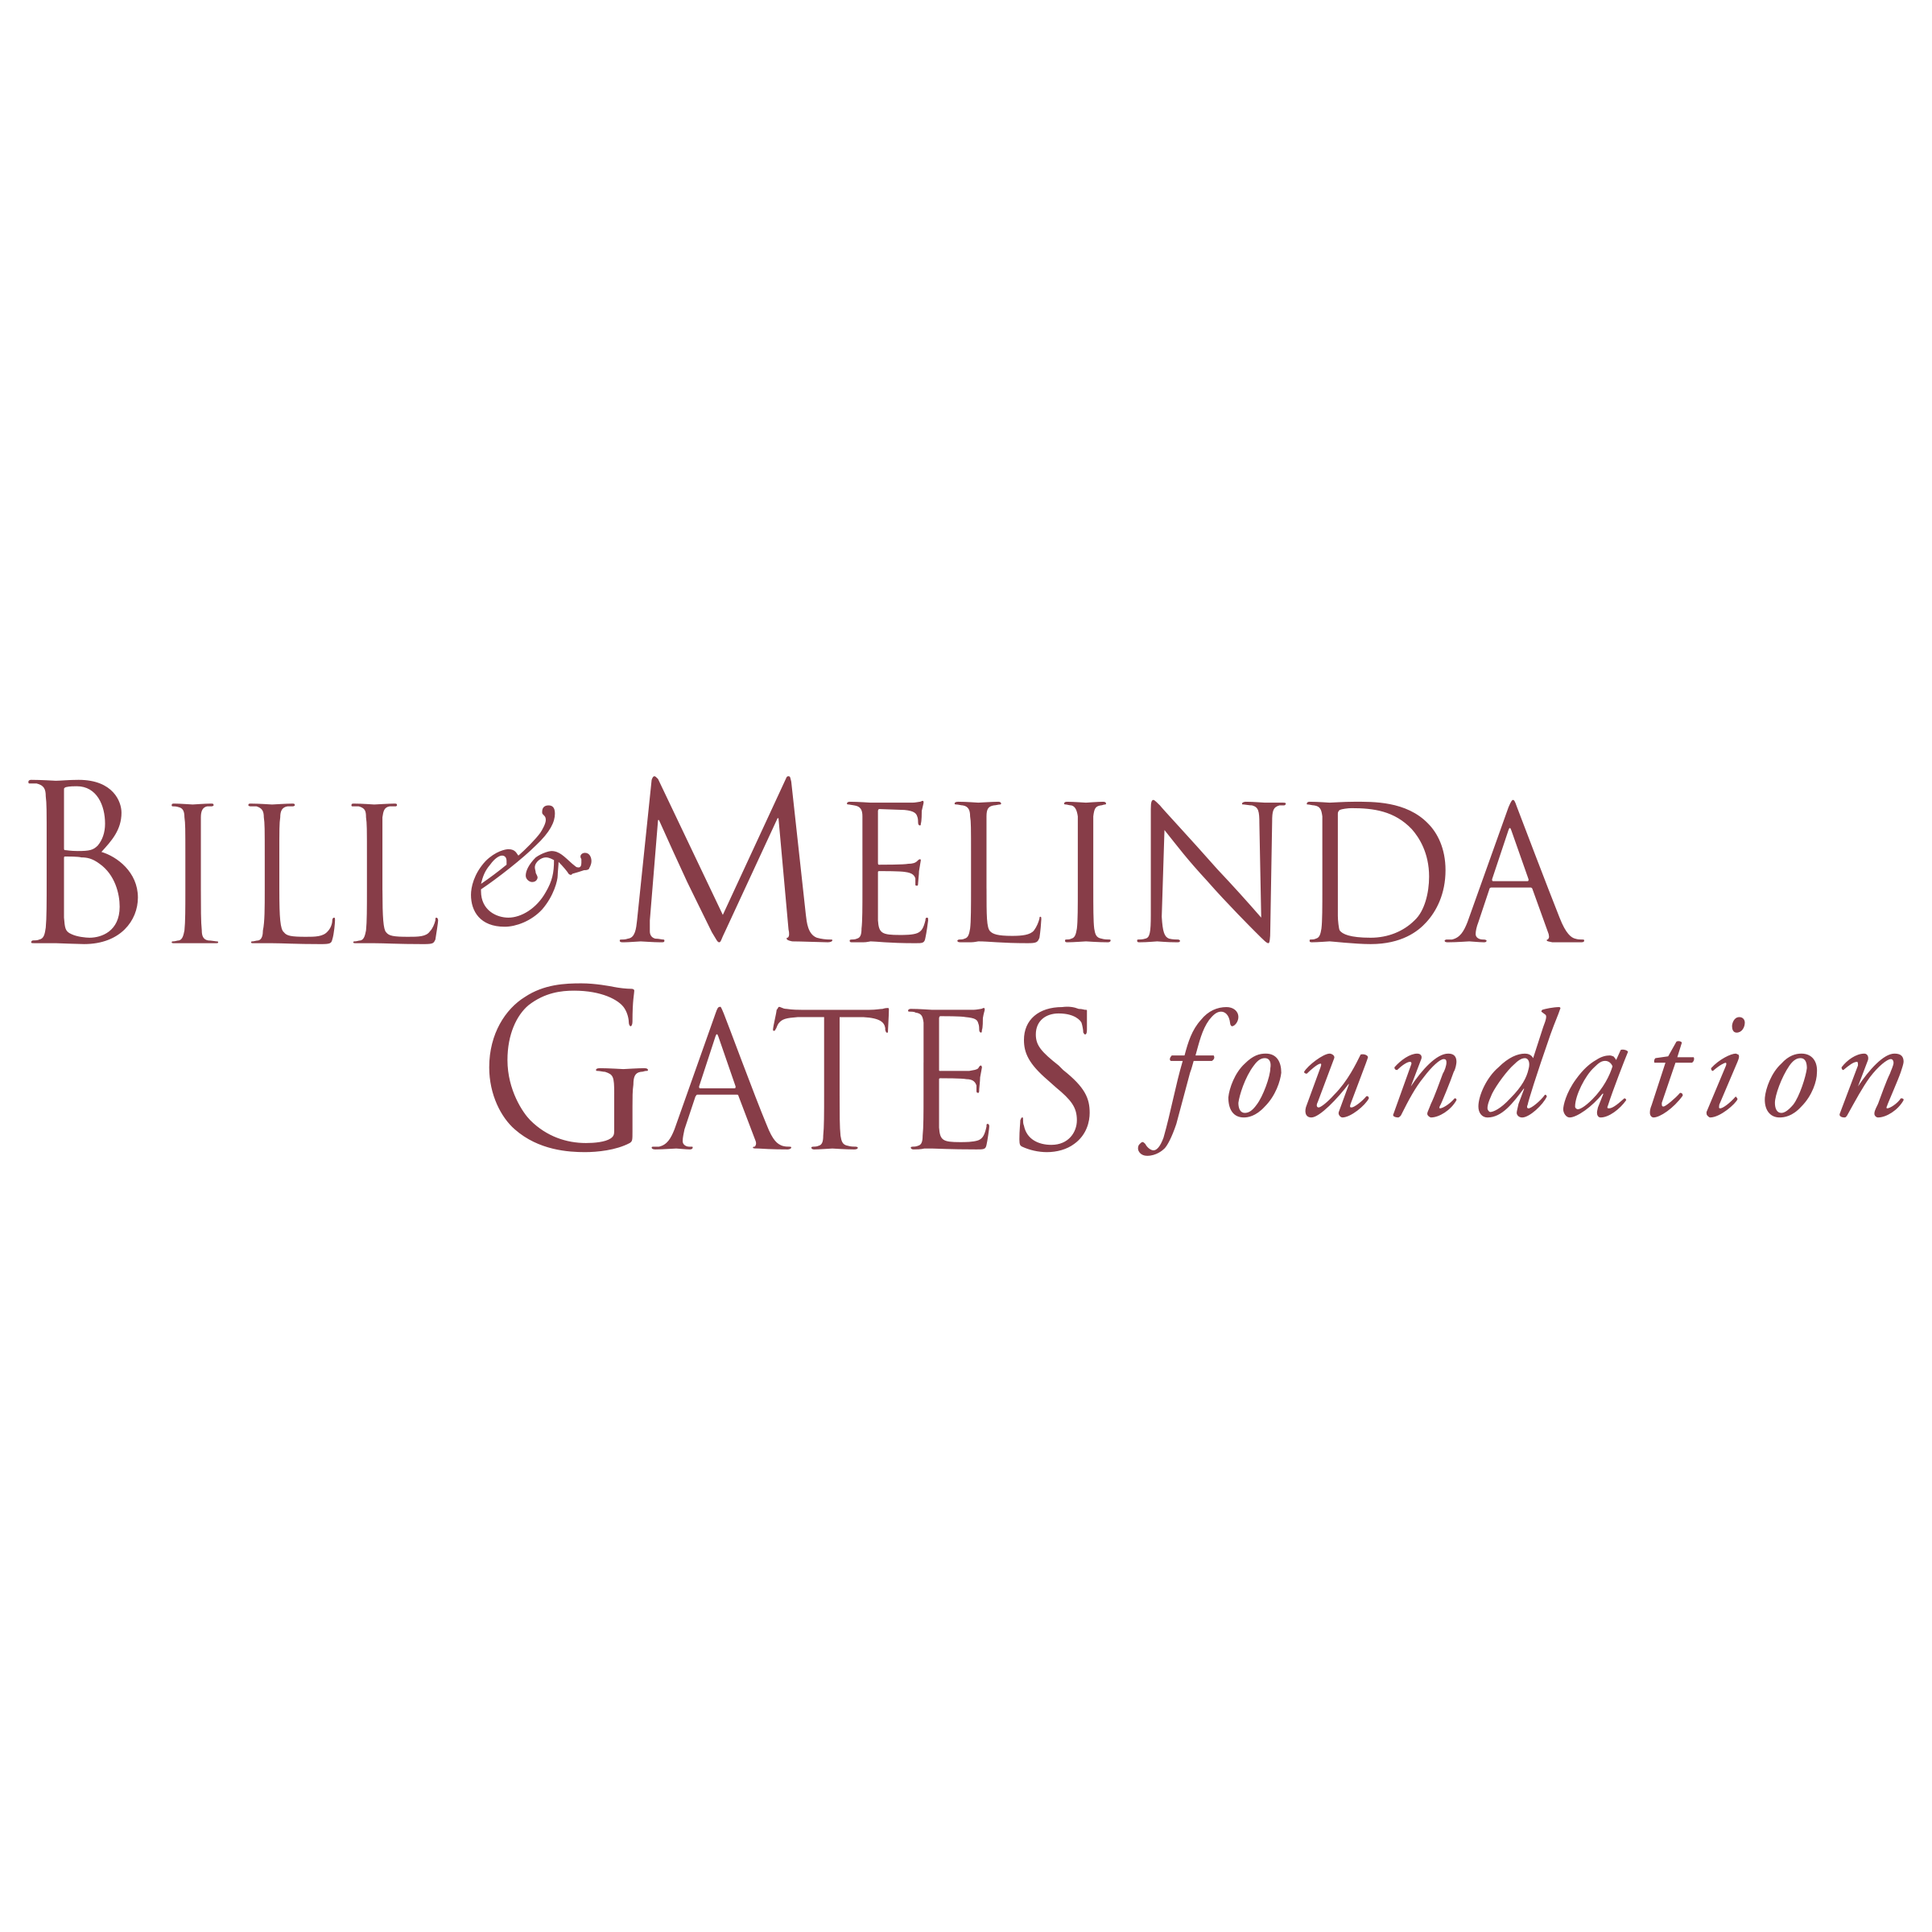 Bill Melinda Gates Foundation Logo Png Transparent